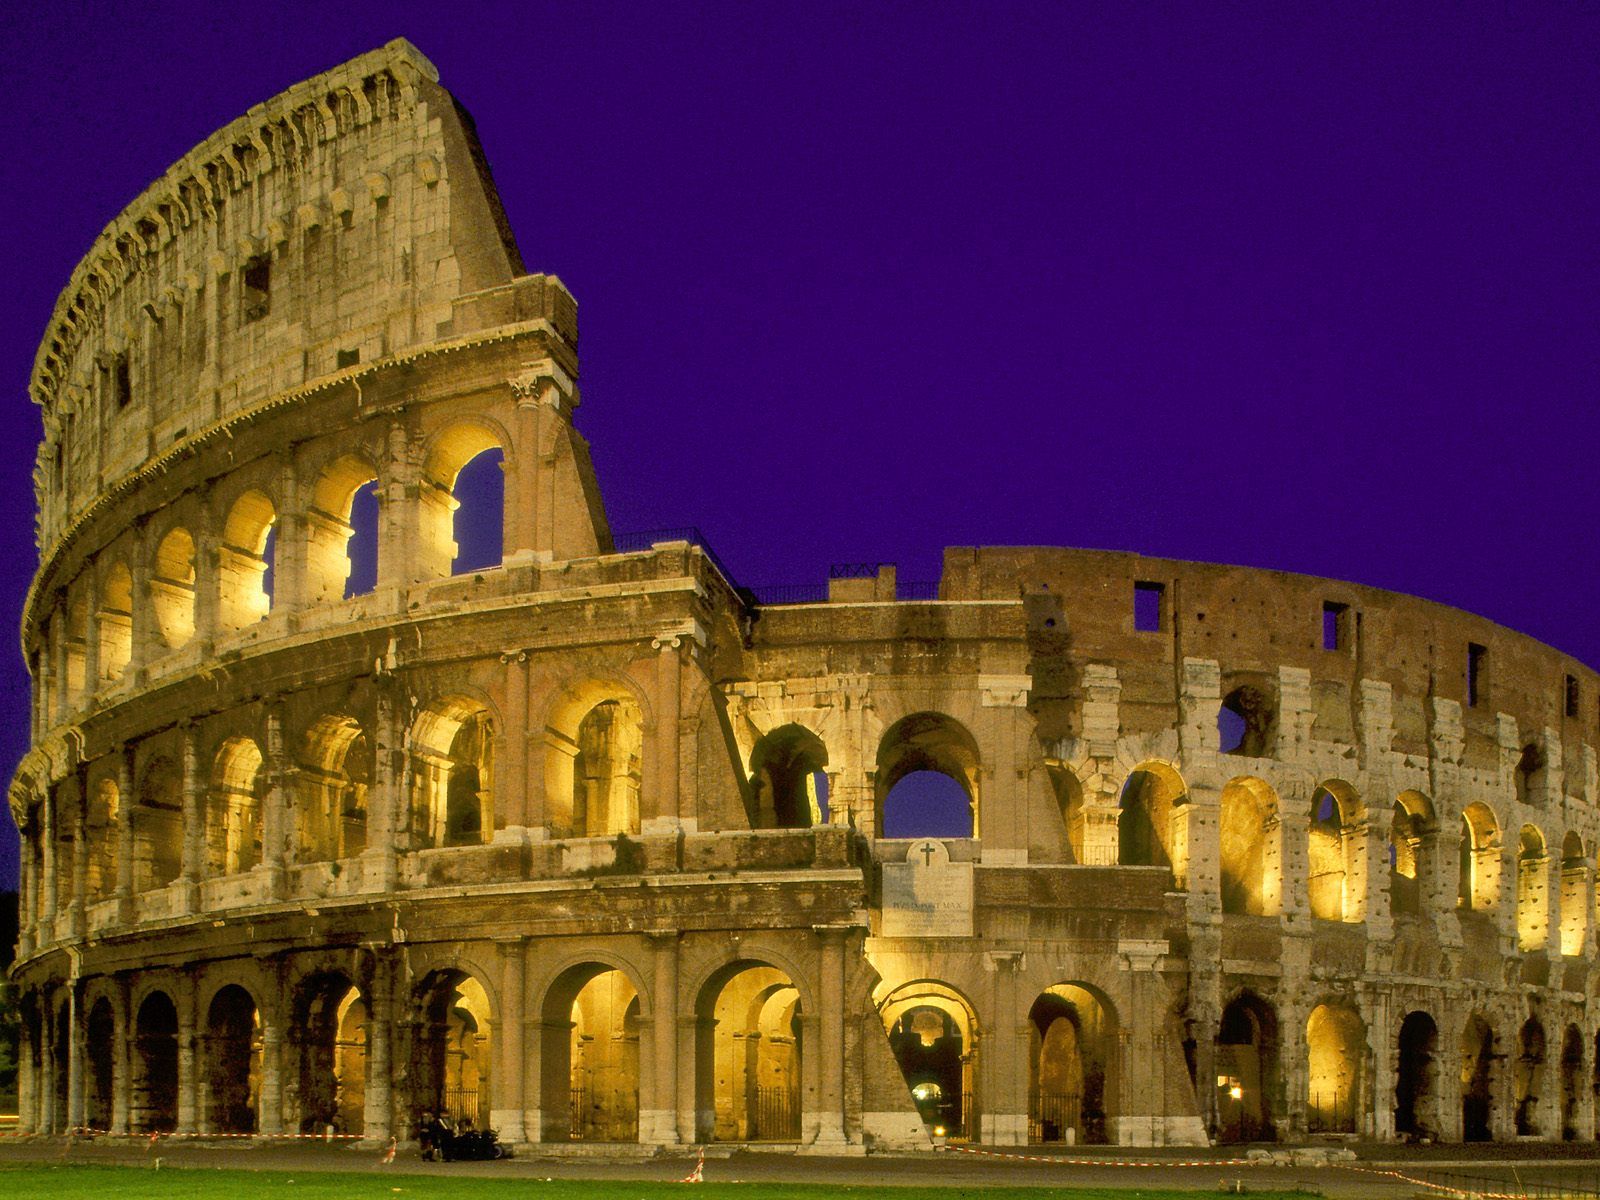 The Colosseum: Emblem of Rome